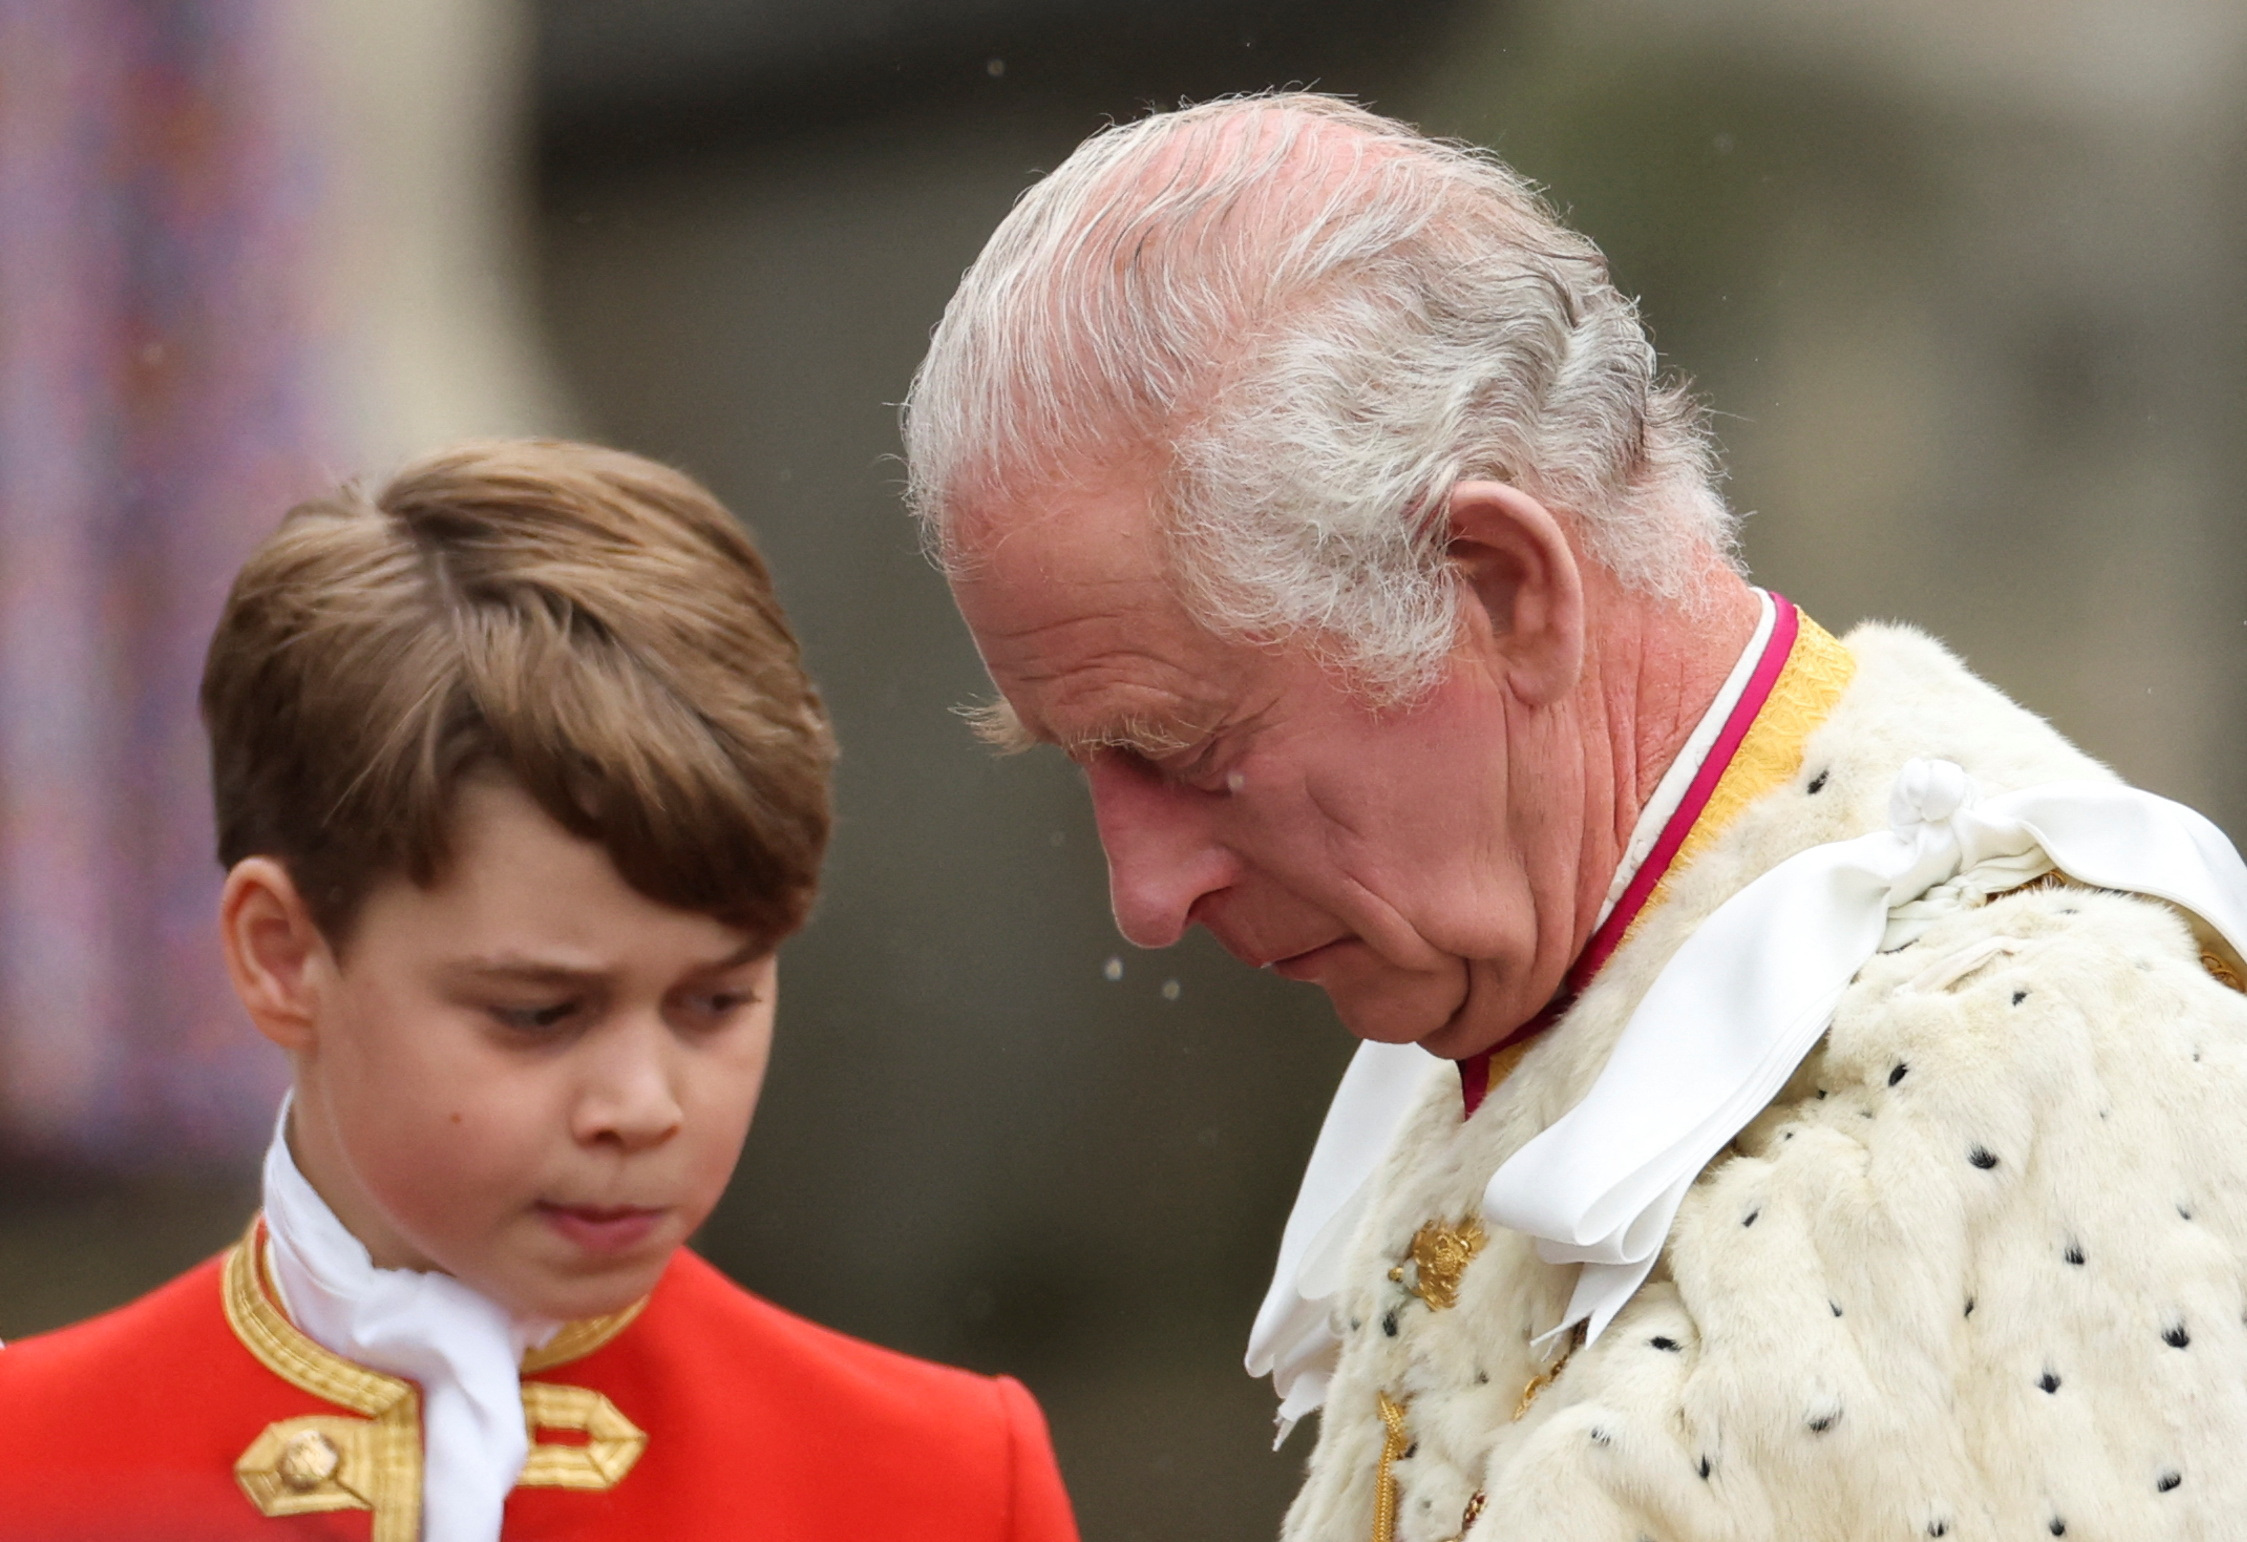 Los divertidos gestos de los hijos de William y Kate en la ceremonia de coronación de Carlos III